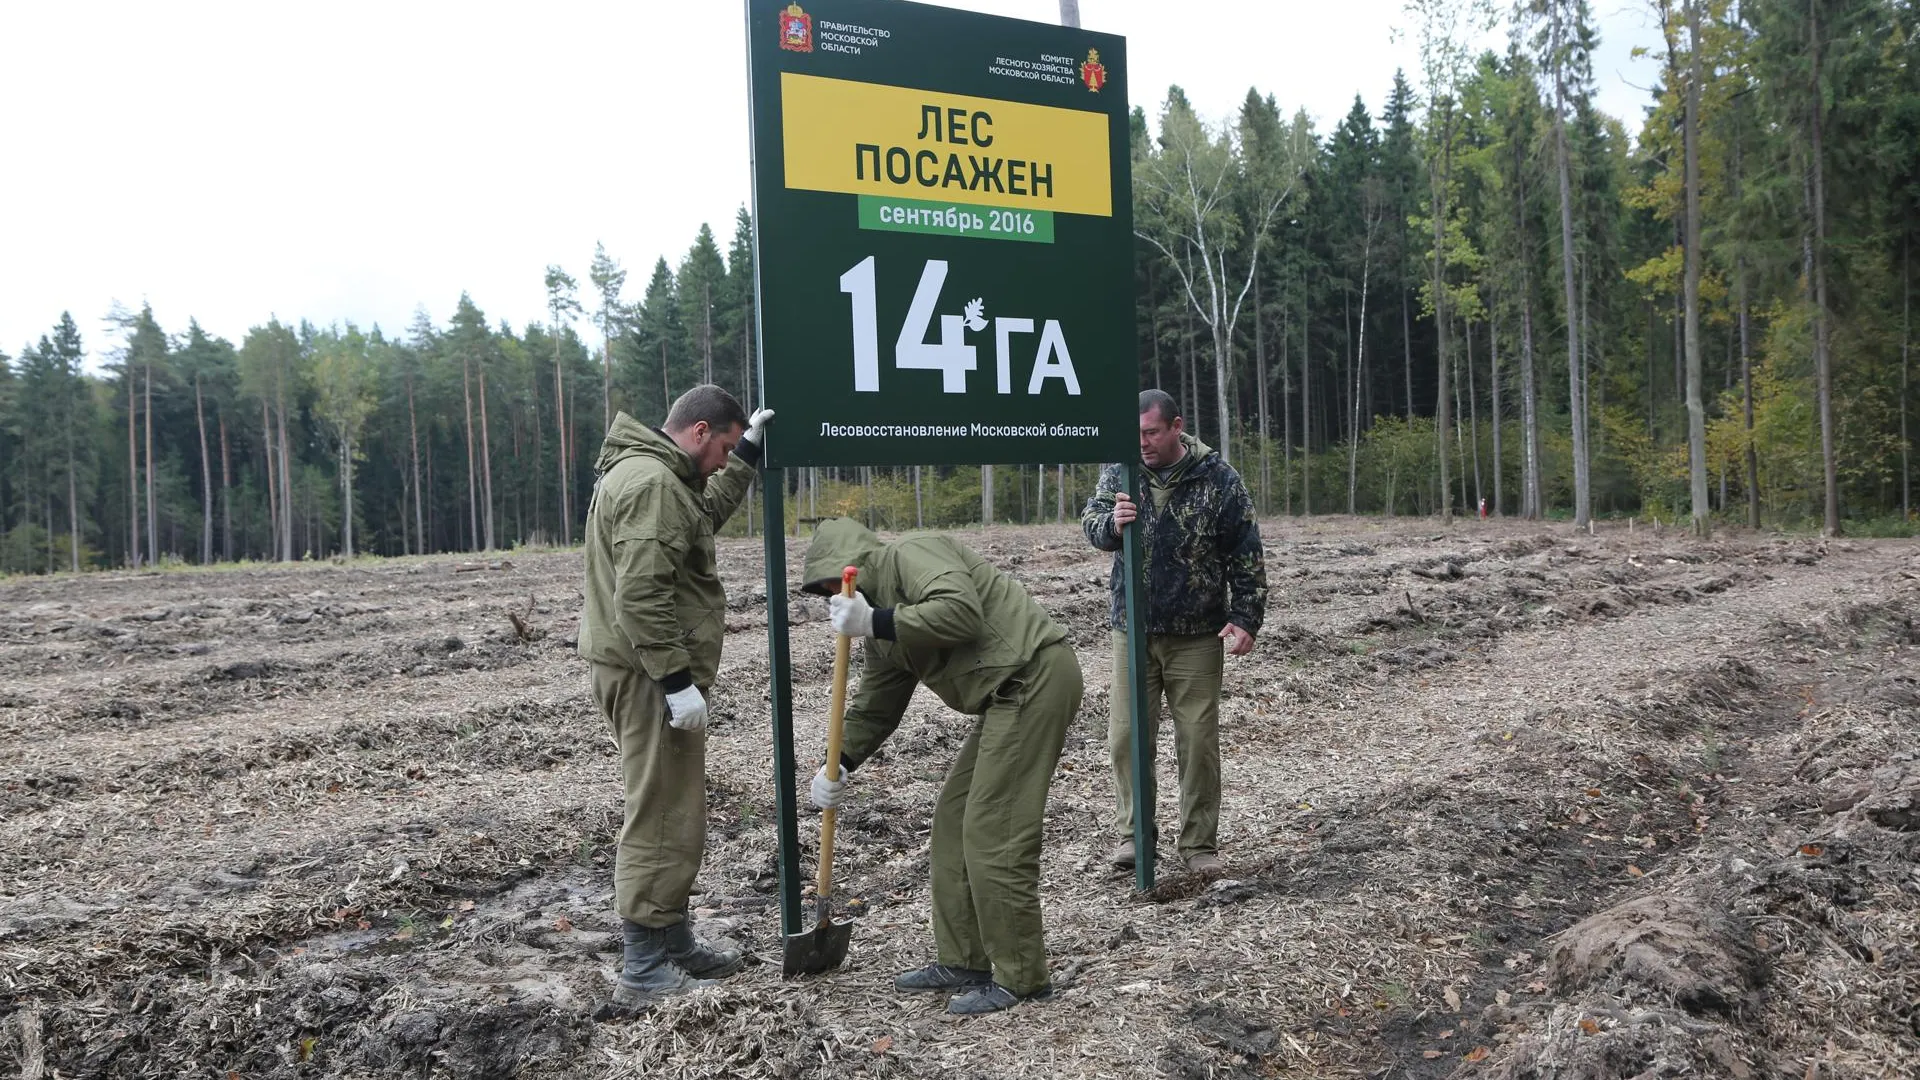 Комитет лесного хозяйства Московской области Сектор взаимодействия со СМИ